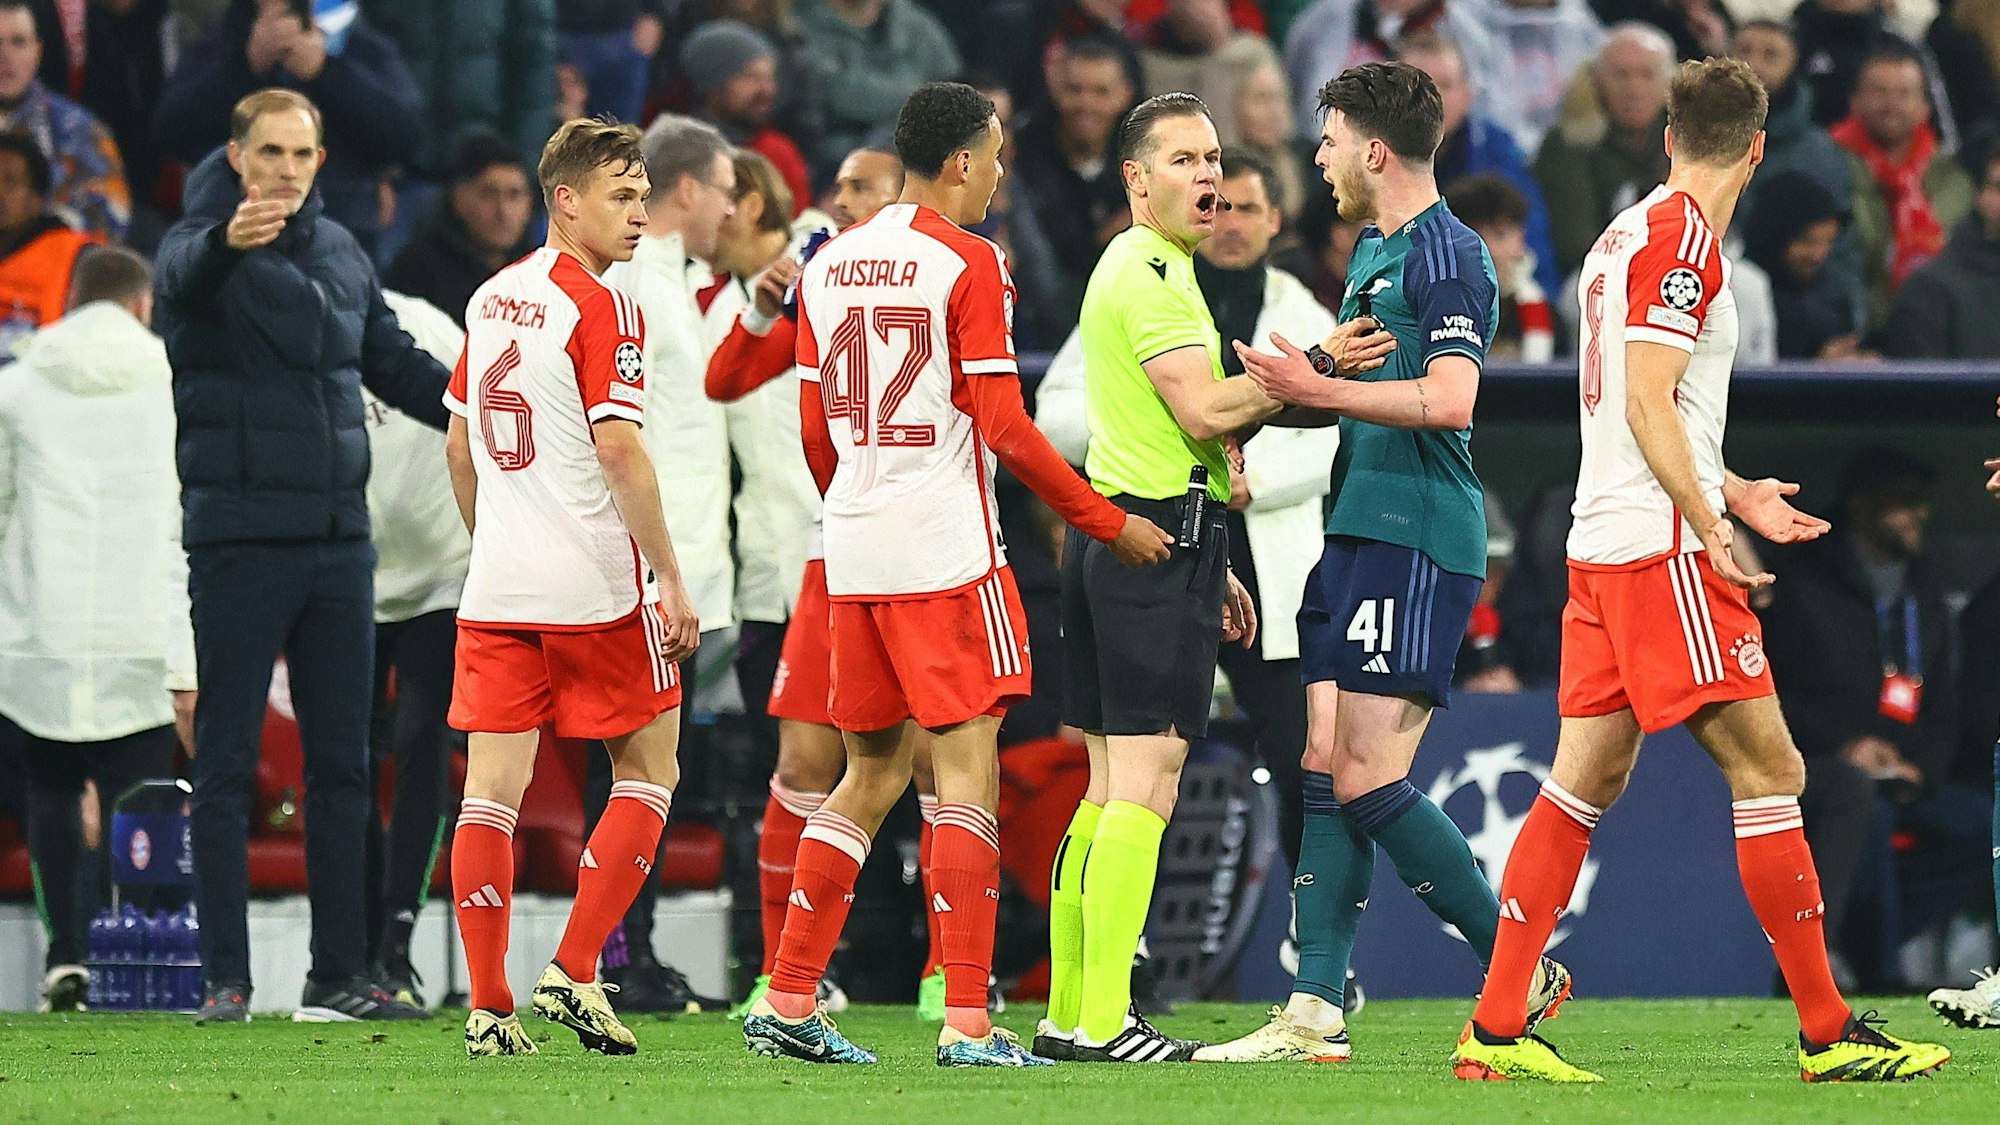 Danny Makkelie wird von mehreren Spielern nach einem Pfiff im Viertelfinale der Champion League zwischen Bayern München und dem FC Arsenal bedrängt.